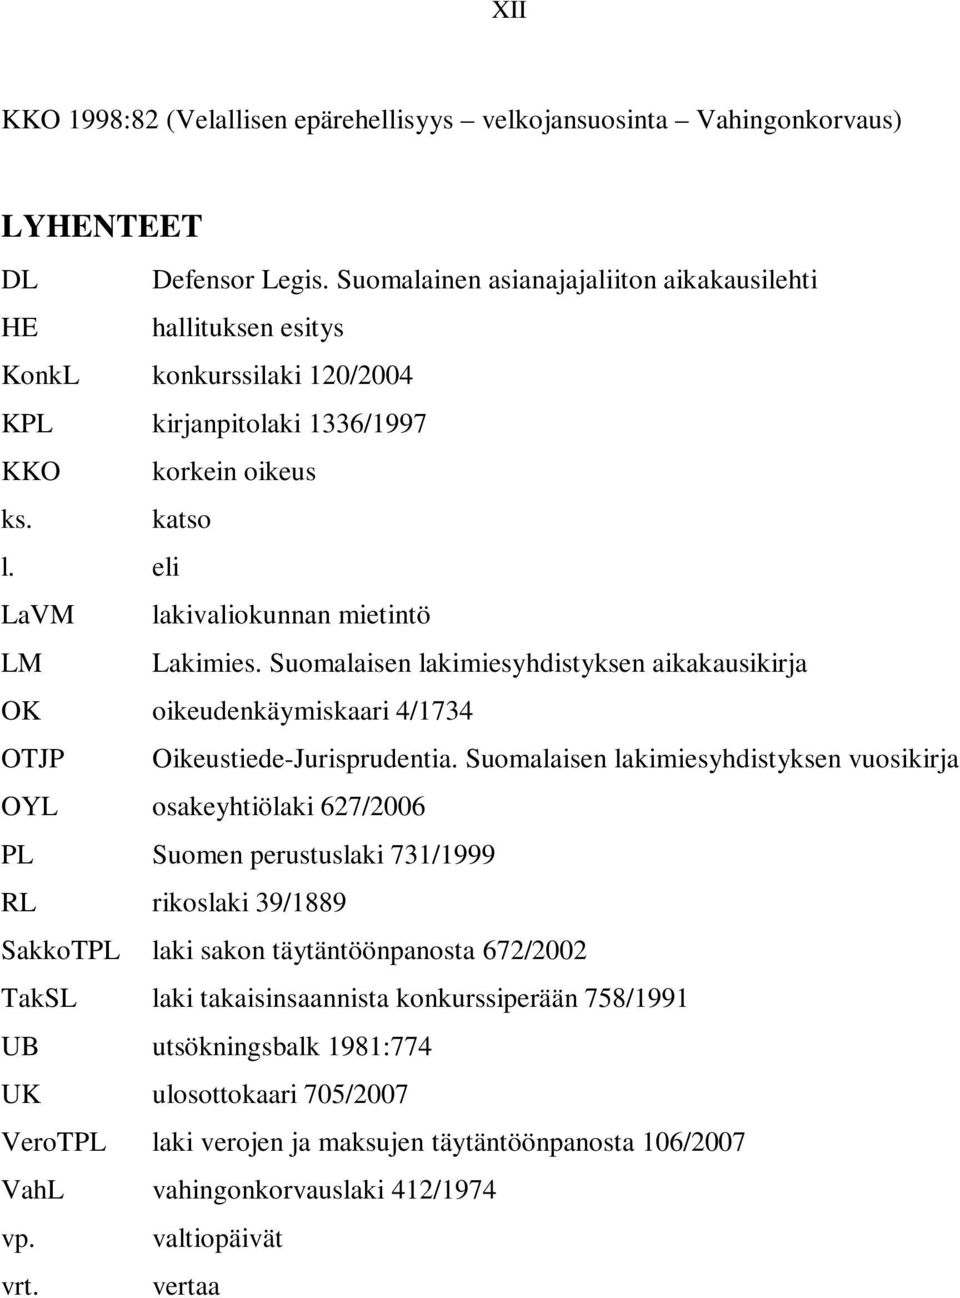 eli LaVM lakivaliokunnan mietintö LM Lakimies. Suomalaisen lakimiesyhdistyksen aikakausikirja OK oikeudenkäymiskaari 4/1734 OTJP Oikeustiede-Jurisprudentia.